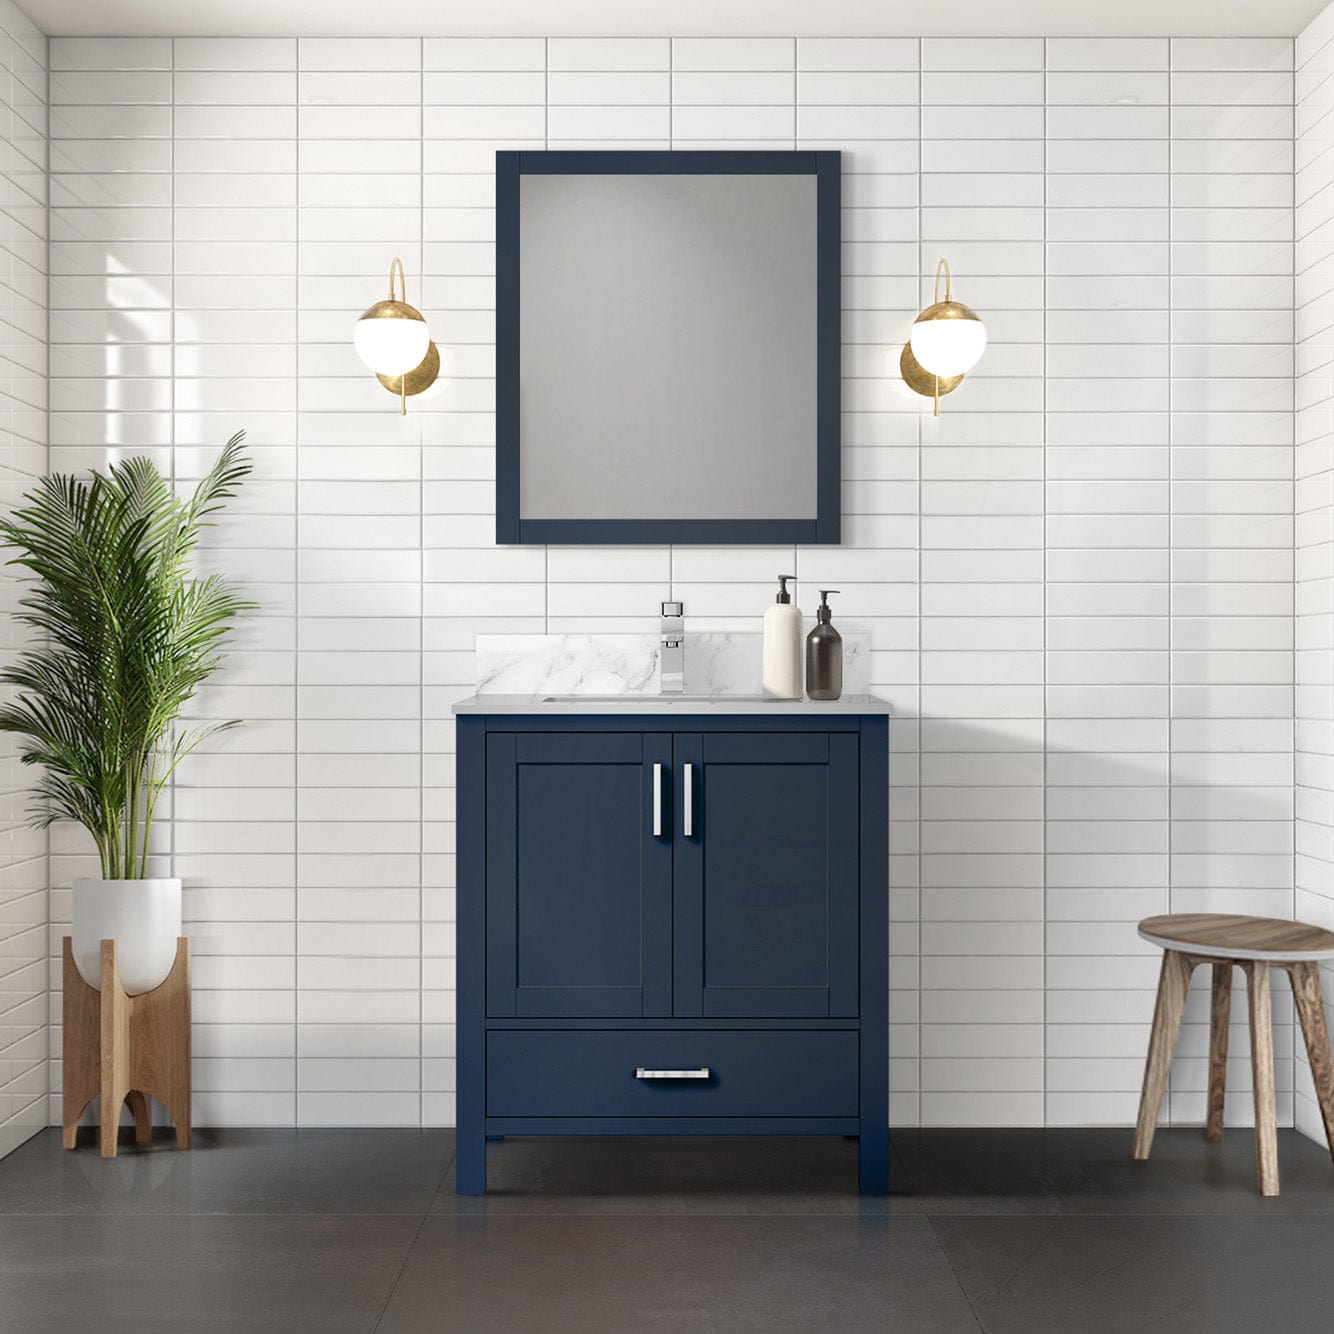 Lexora Bathroom Vanity Navy Blue / Carrara Marble / No Mirror Big Sur 30" x 22" Bath Vanity